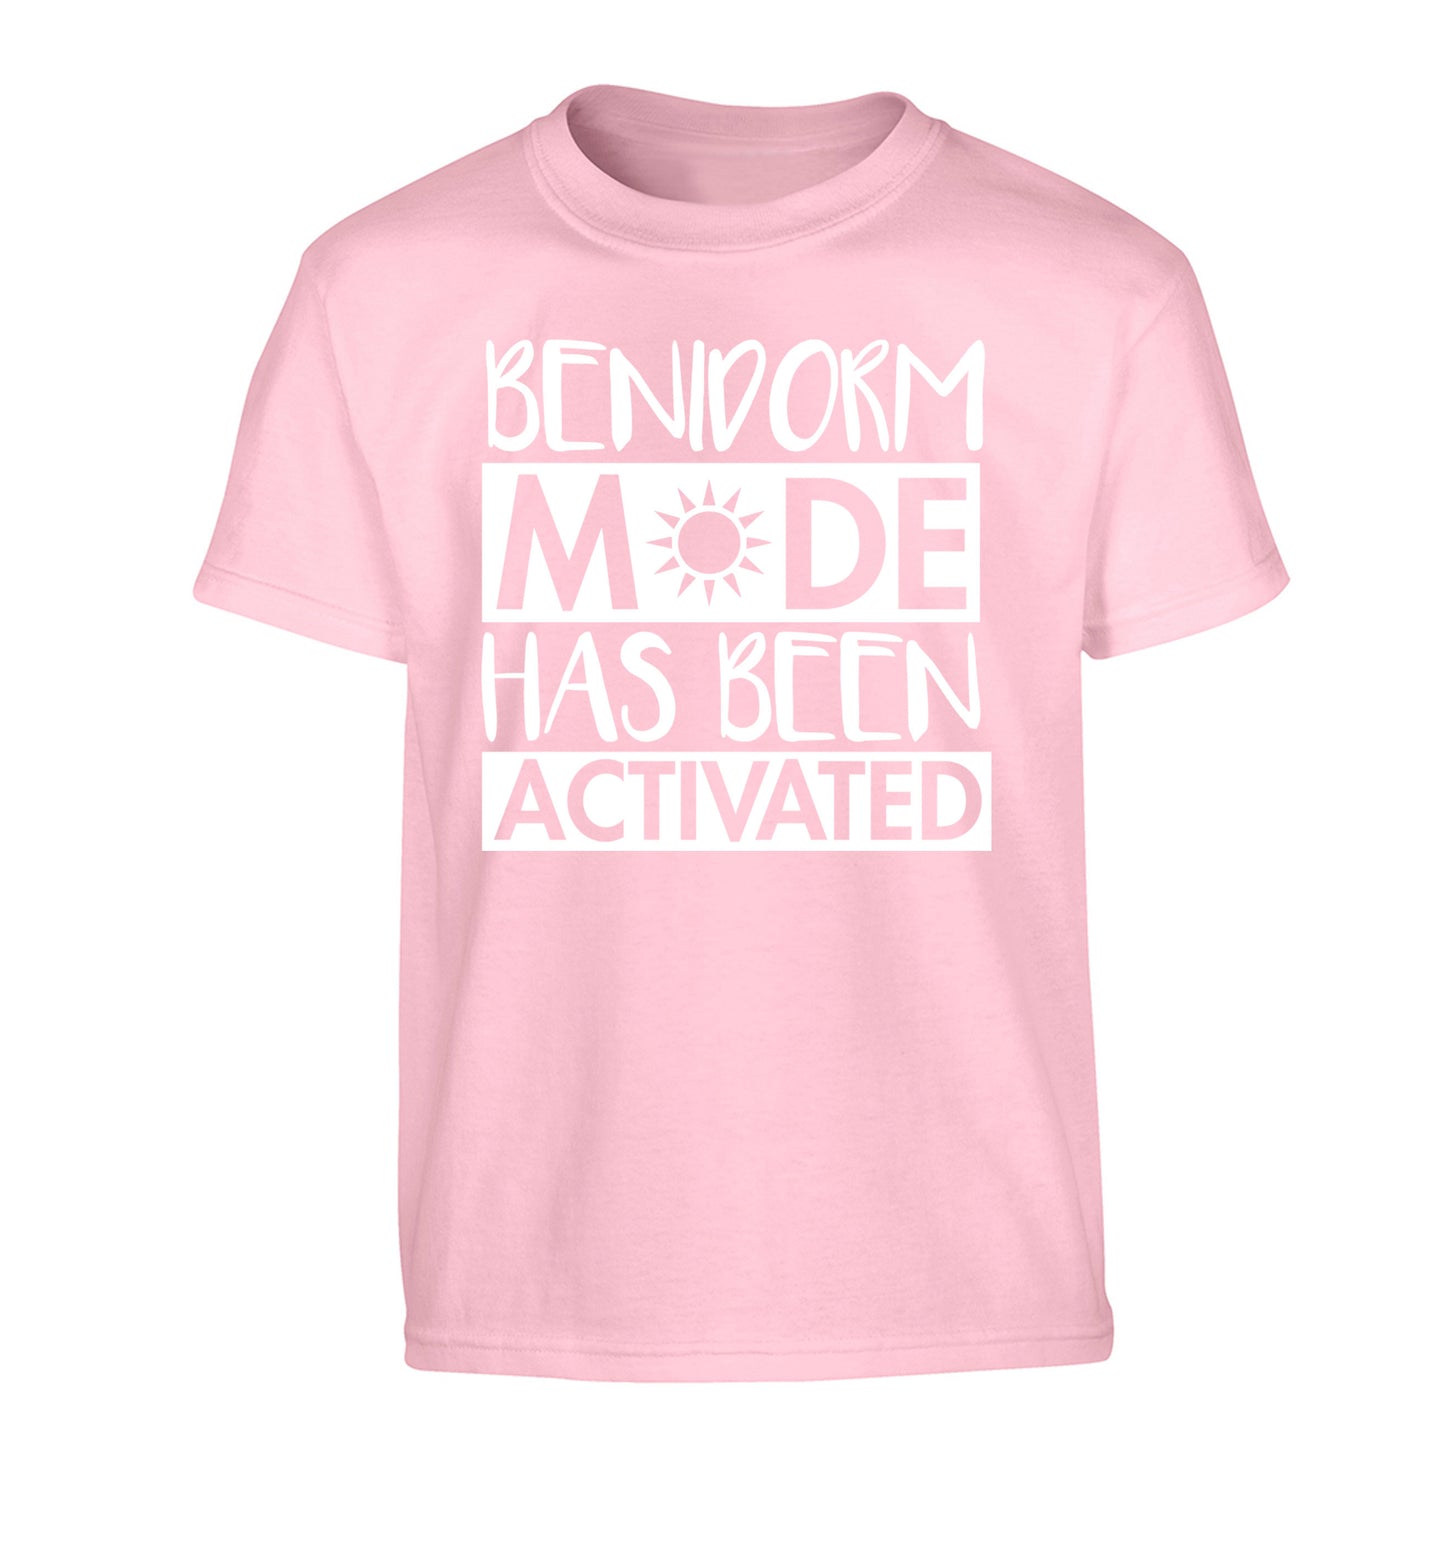 Benidorm mode has been activated Children's light pink Tshirt 12-14 Years